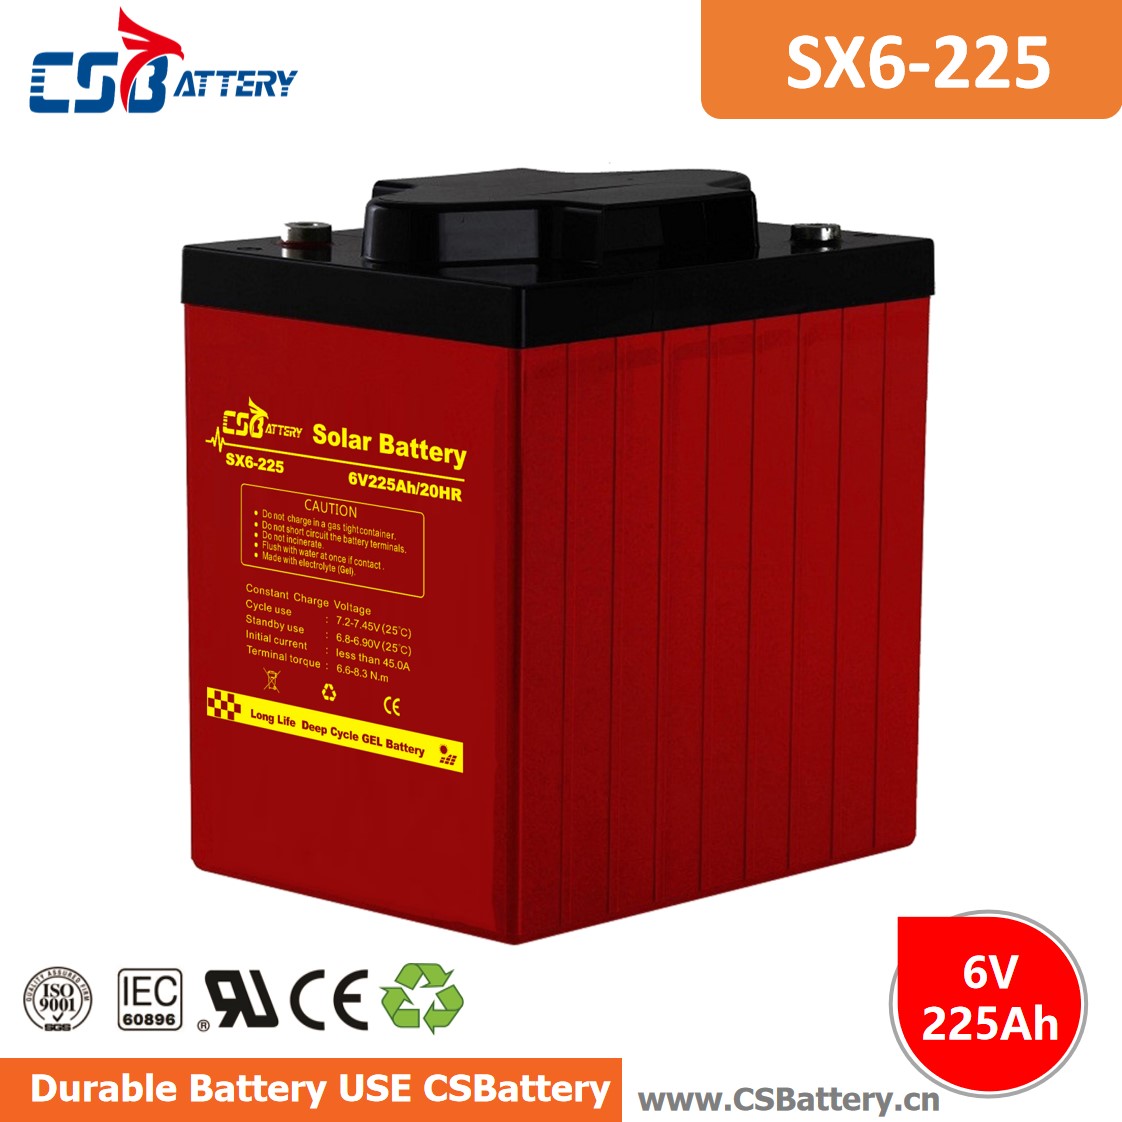 SX6-225 6V 225Ah Deep Cycle GEL Batterie-Ada
